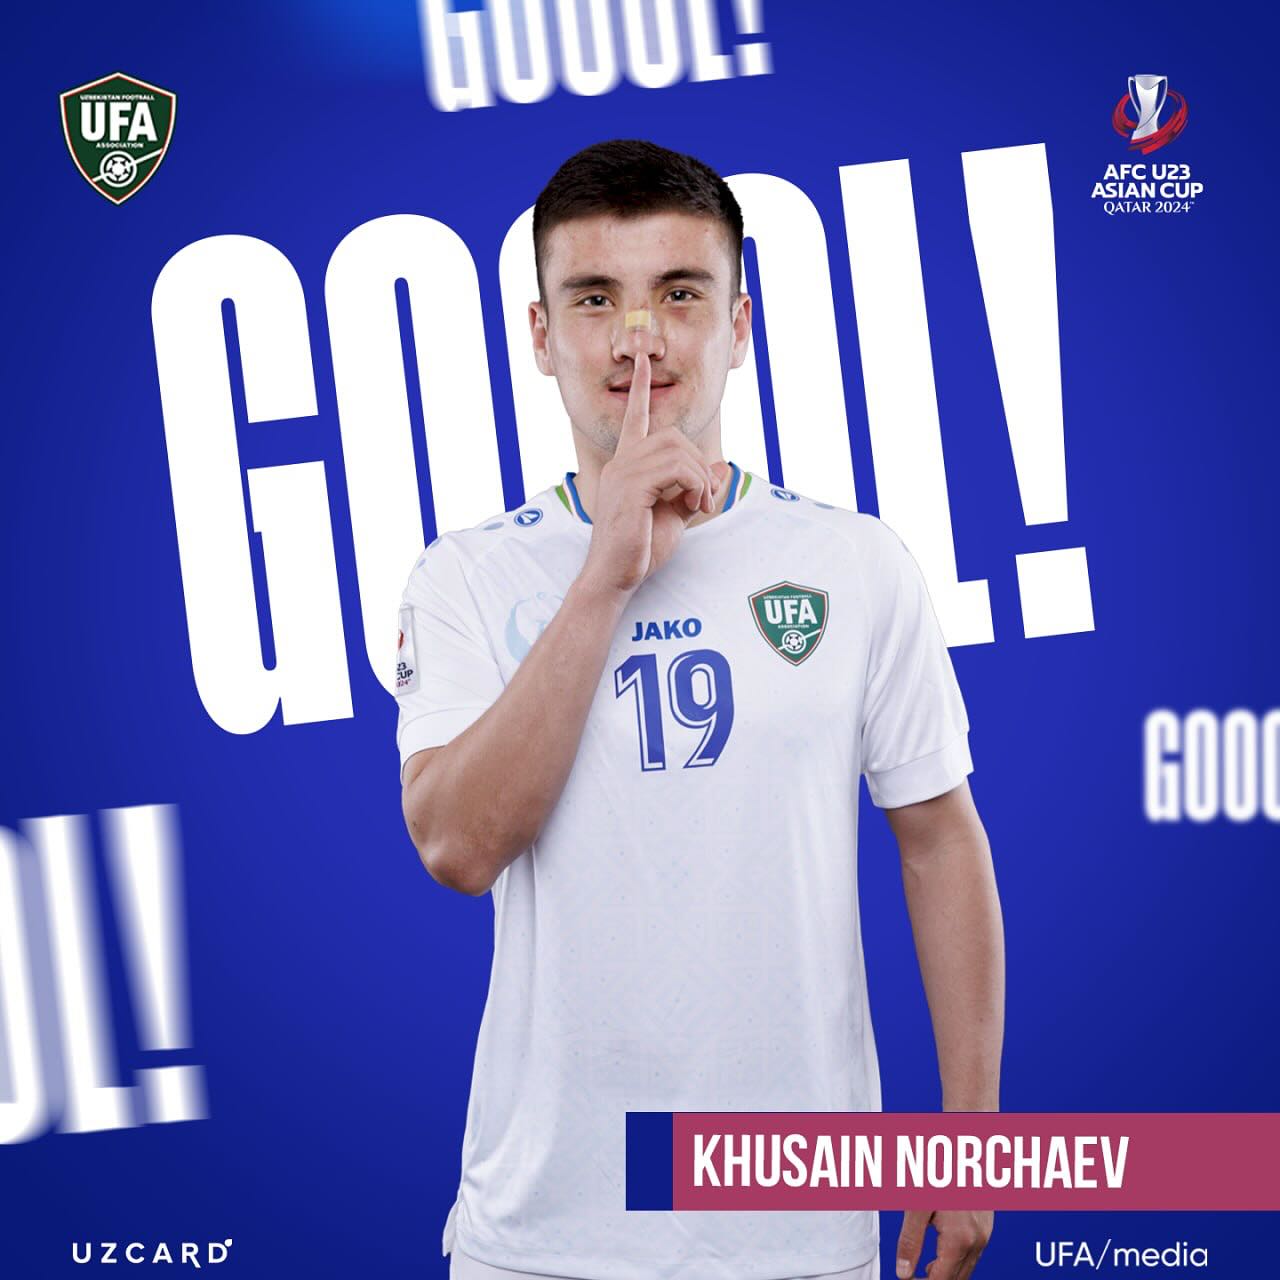 Khusain Norchaev: Tiền đạo này chính là vua phá lưới vòng loại U23 châu Á 2024 với 6 bàn thắng. Ở trận gặp U23 Kuwait mới đây, tiền đạo này đã ghi 1 bàn cũng như thực hiện hỏng 1 quả phạt đền. Tổng cộng trong màu áo U23 Uzbekistan, chân sút đang khoác áo Netfchi đã ghi 11 bàn sau 24 trận ra sân.